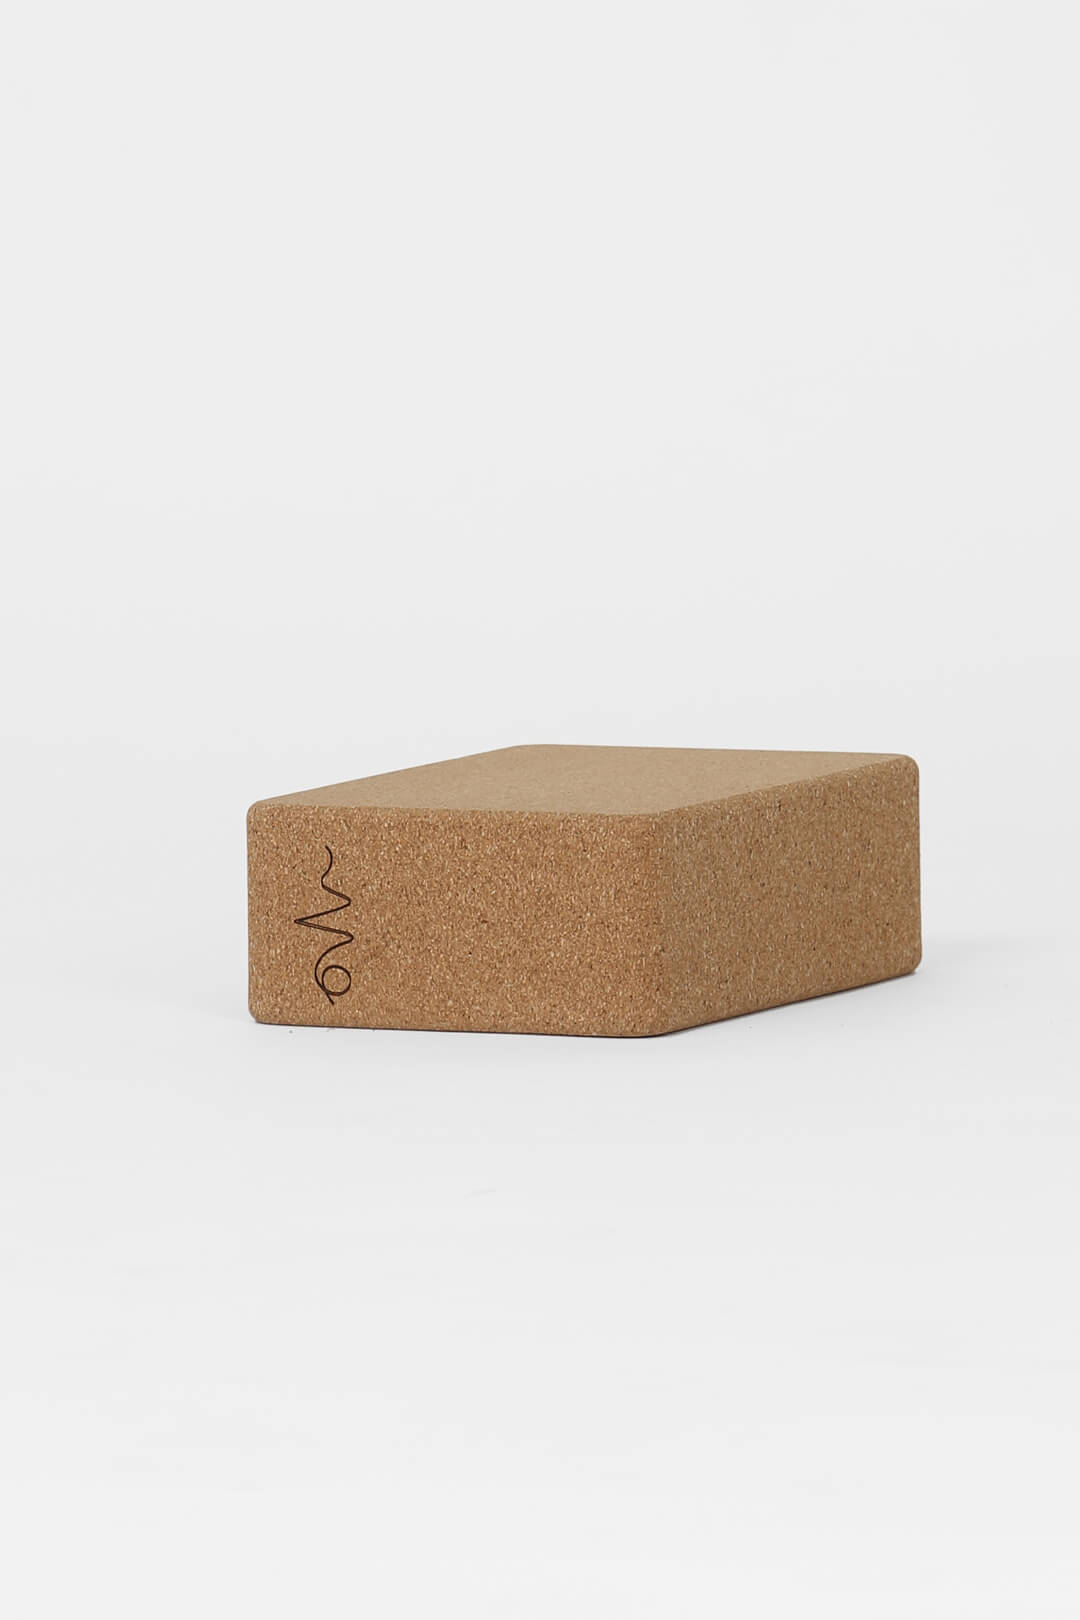 Premium Cork Yoga Block